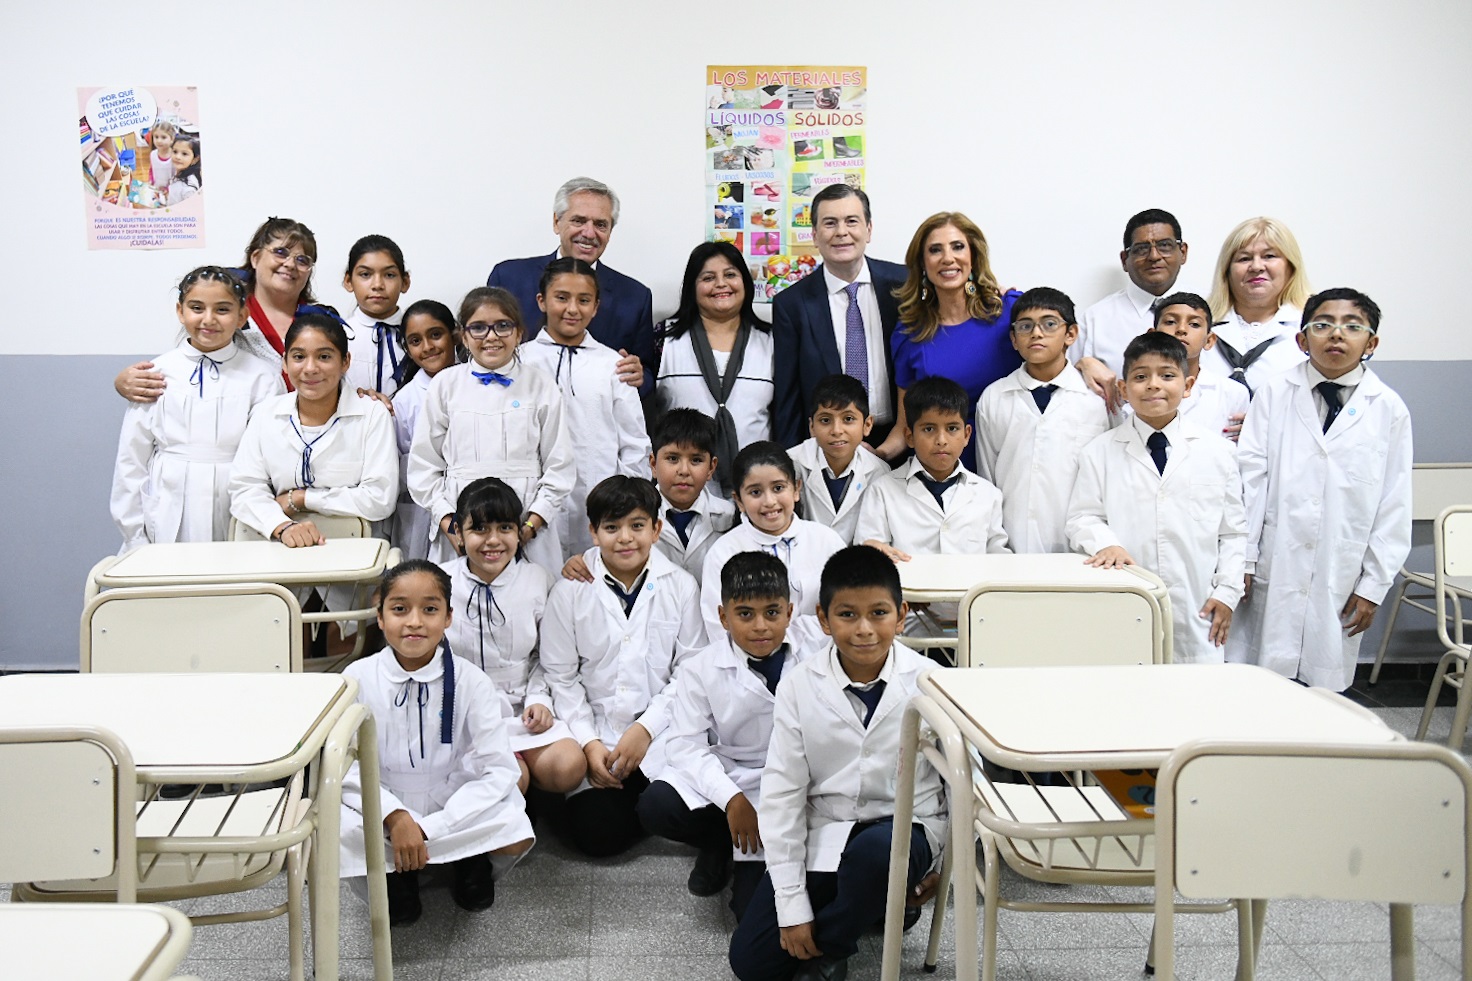 El presidente inauguró las obras de ampliación y puesta en valor de la Escuela Centenario en Santiago del Estero